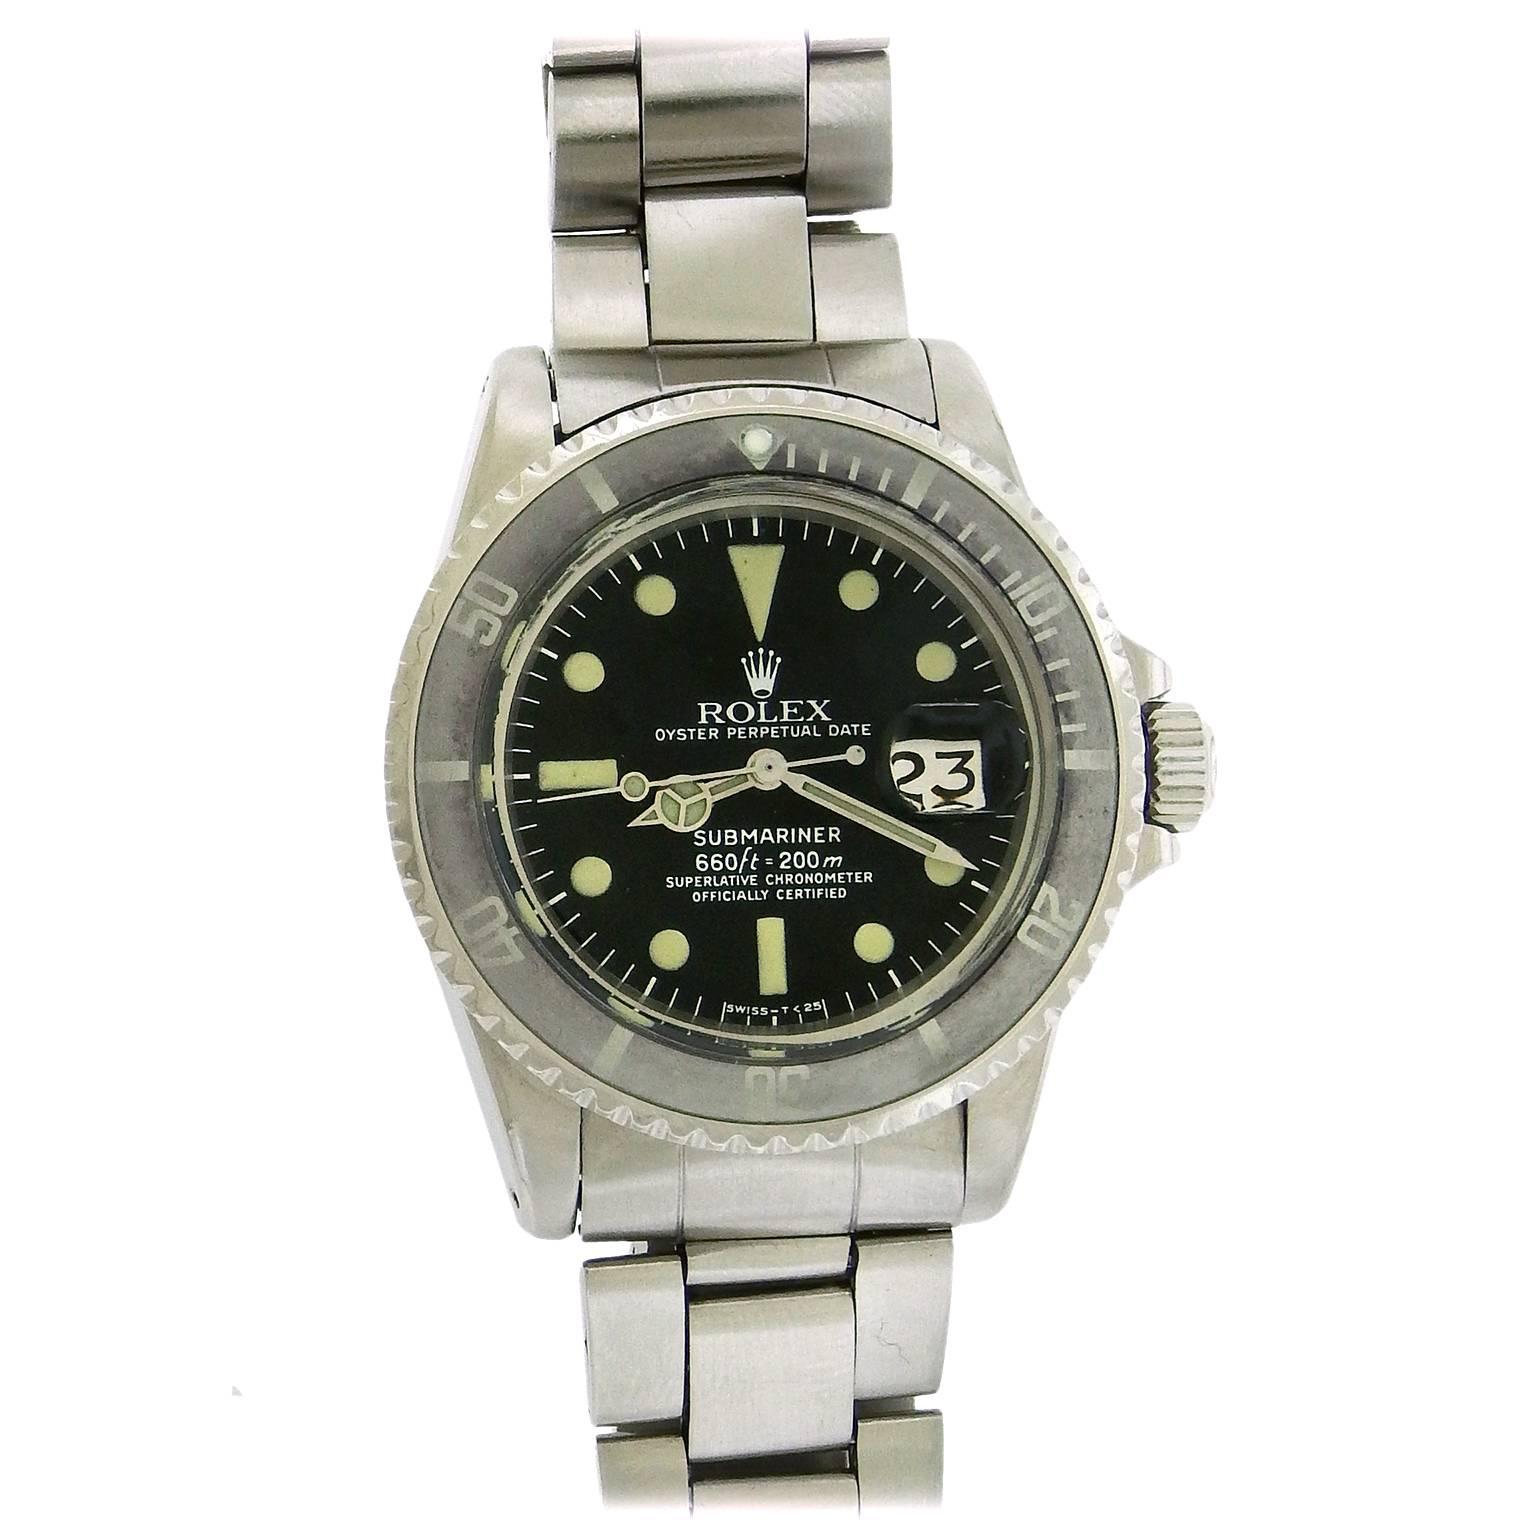 Men's Rolex Stainless Steel Submariner Diver's Wristwatch Ref. 1680 Circa 1971